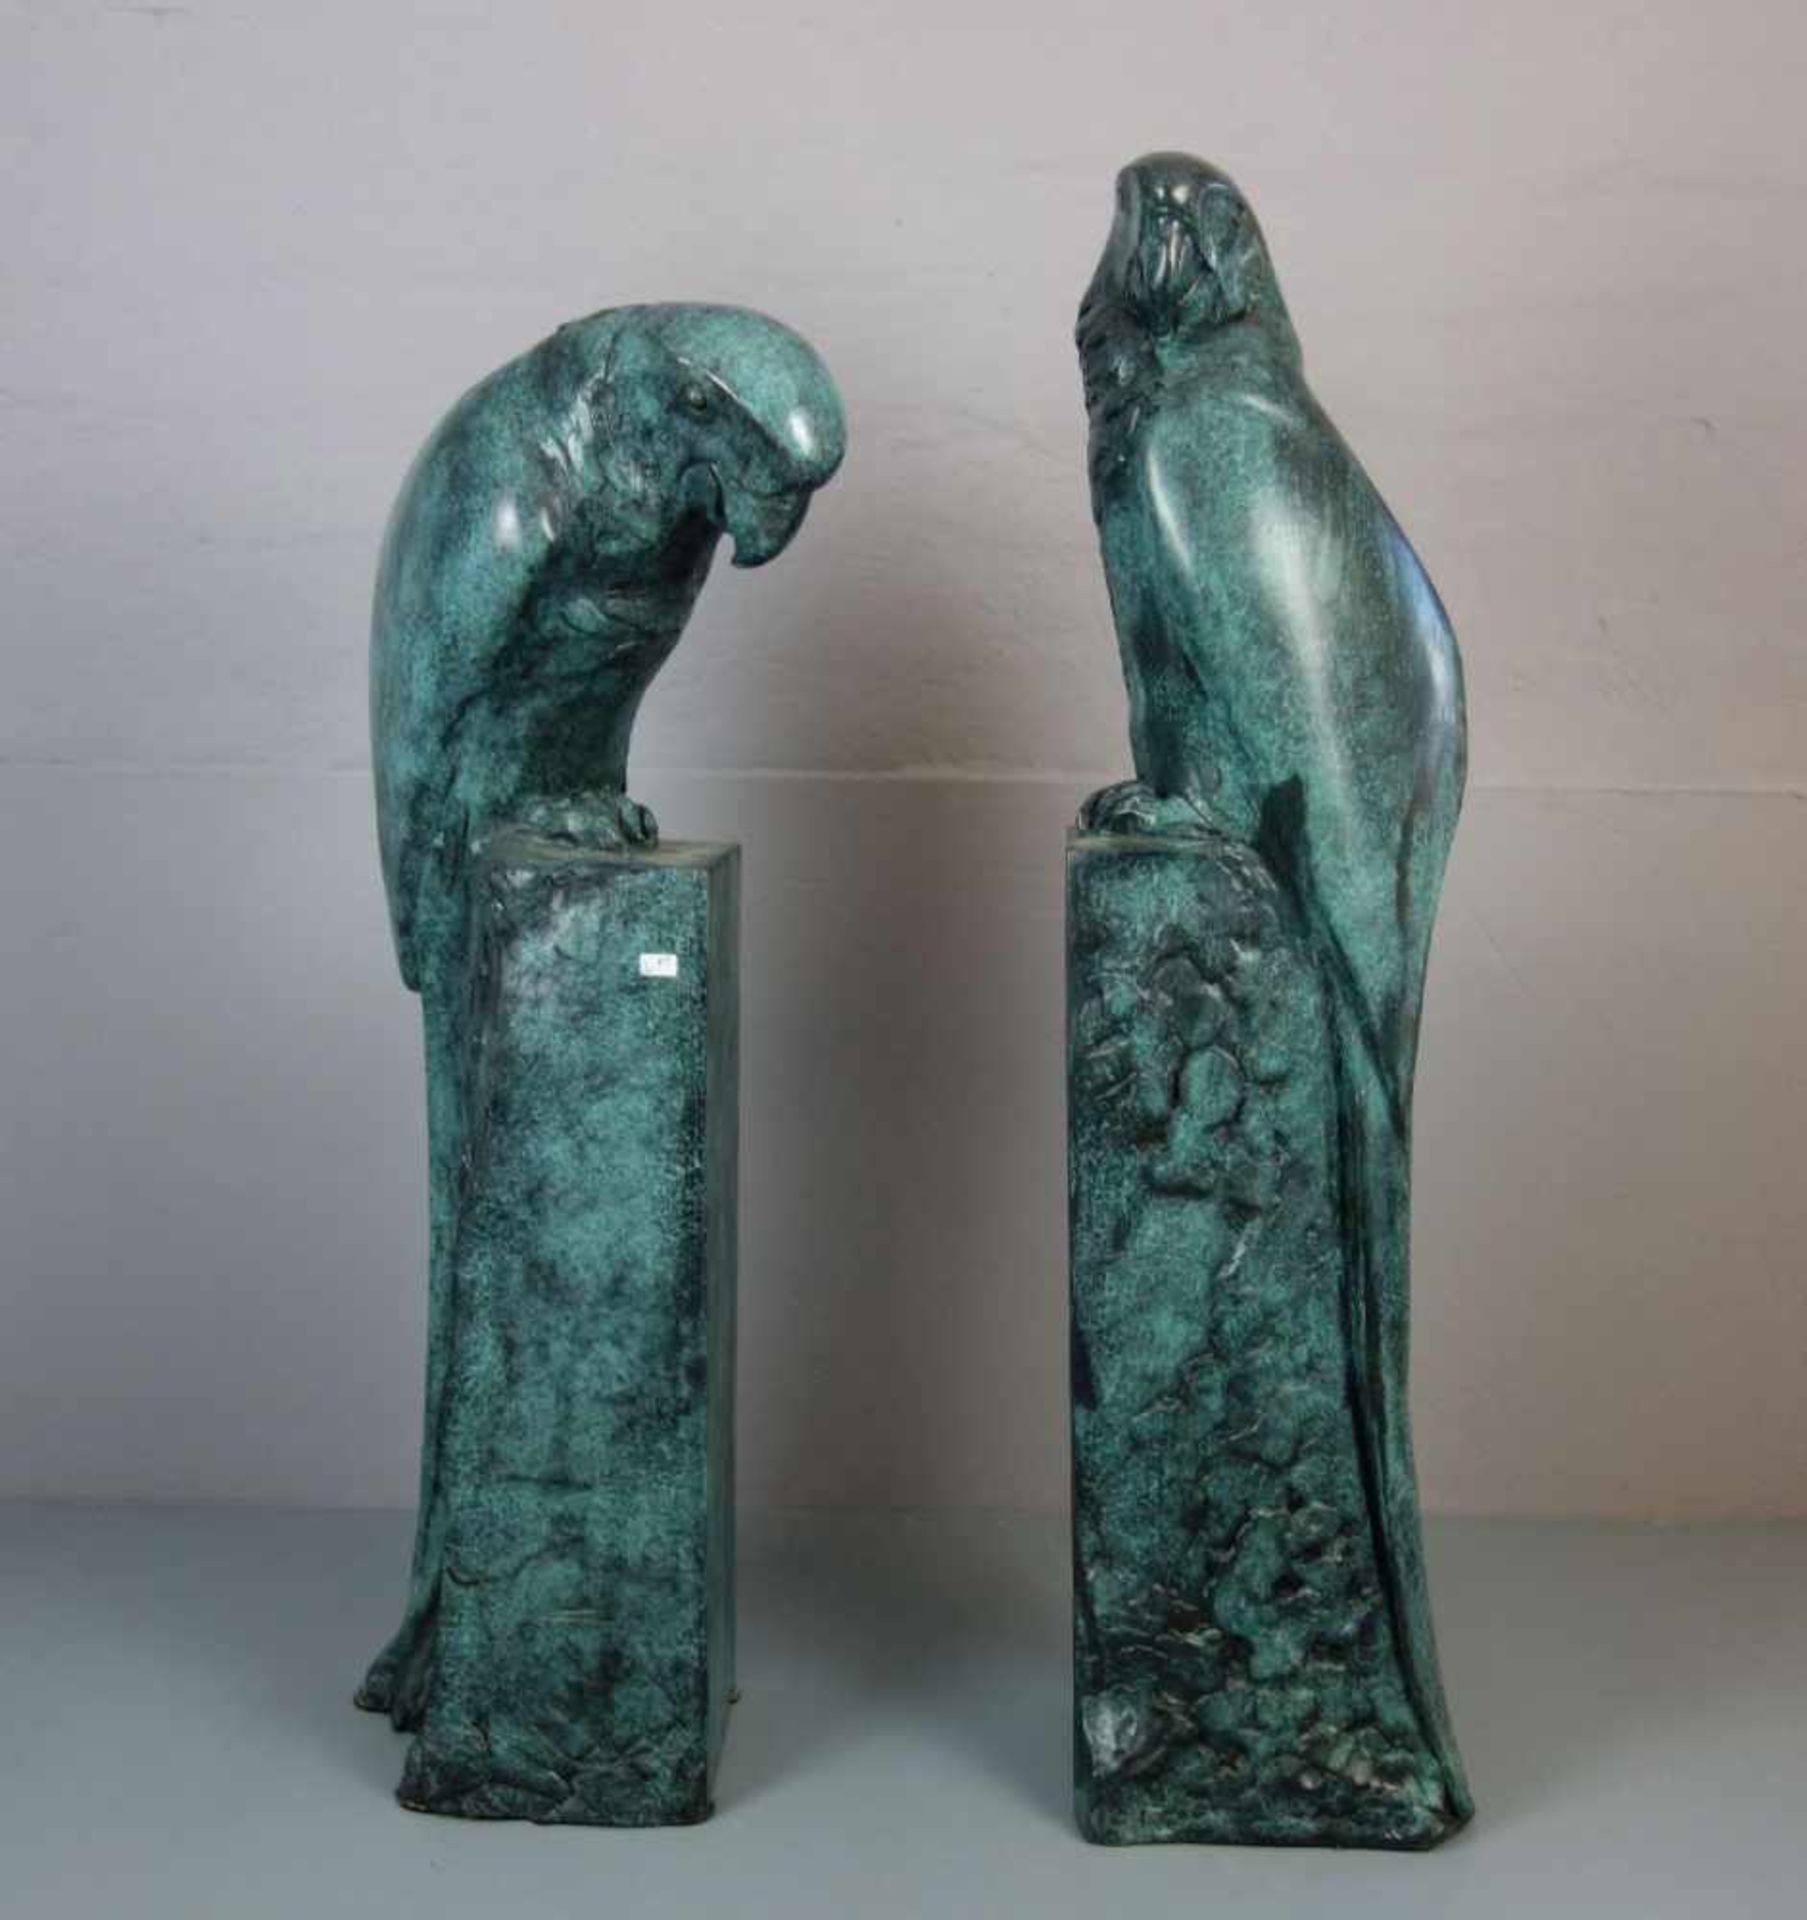 ANONYMUS (Bildhauer / Animalier des 20. Jh.), Skulpturenpaar / sculptures: "Papageien / Aras",